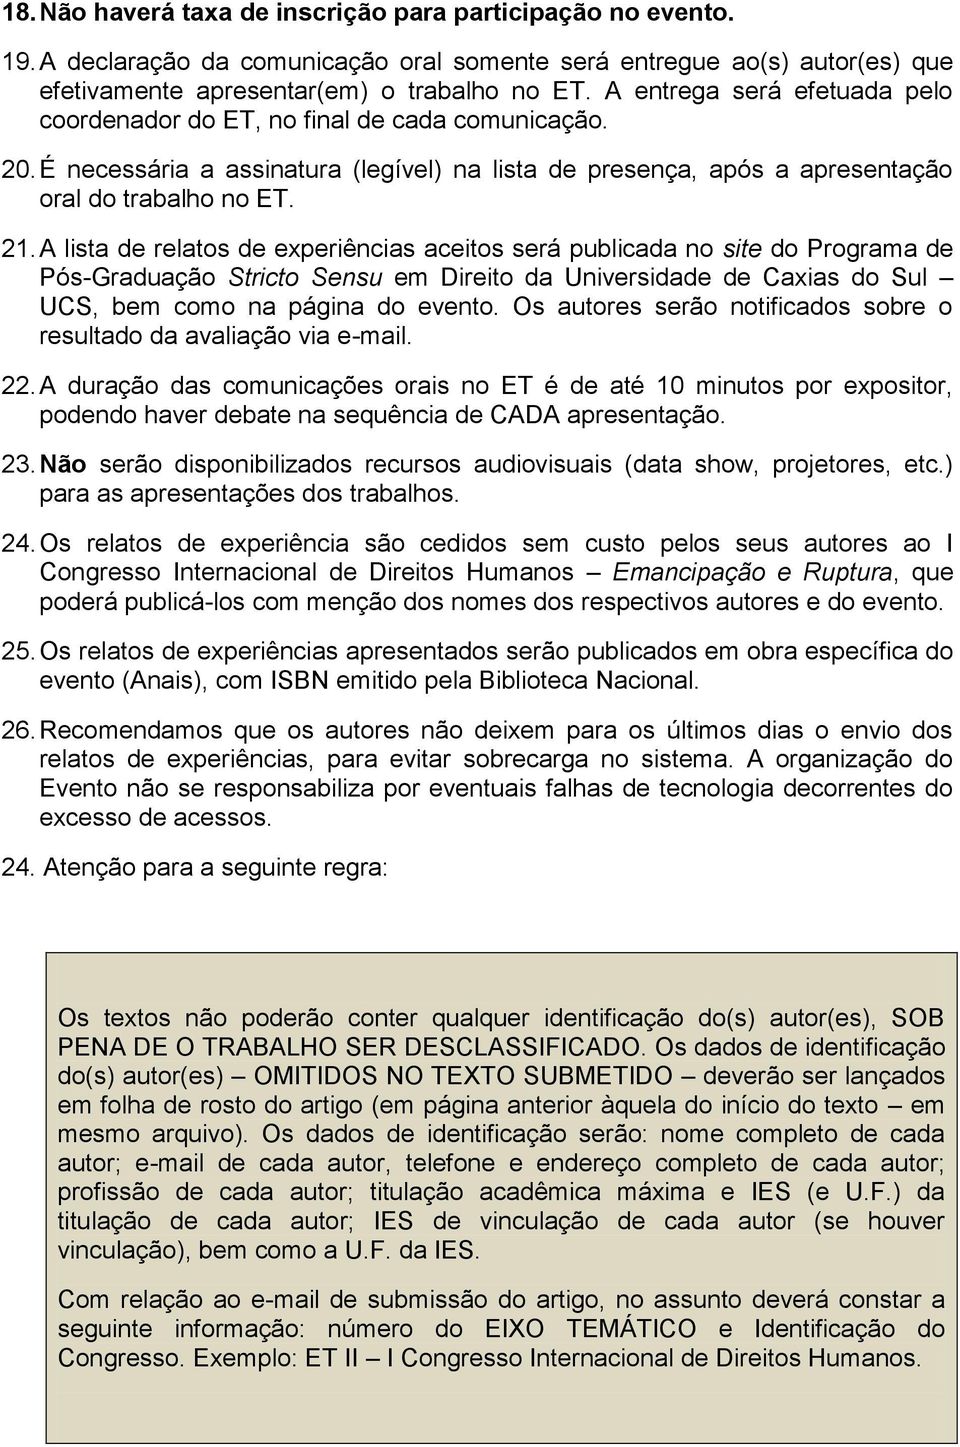 A lista de relatos de experiências aceitos será publicada no site do Programa de Pós-Graduação Stricto Sensu em Direito da Universidade de Caxias do Sul UCS, bem como na página do evento.